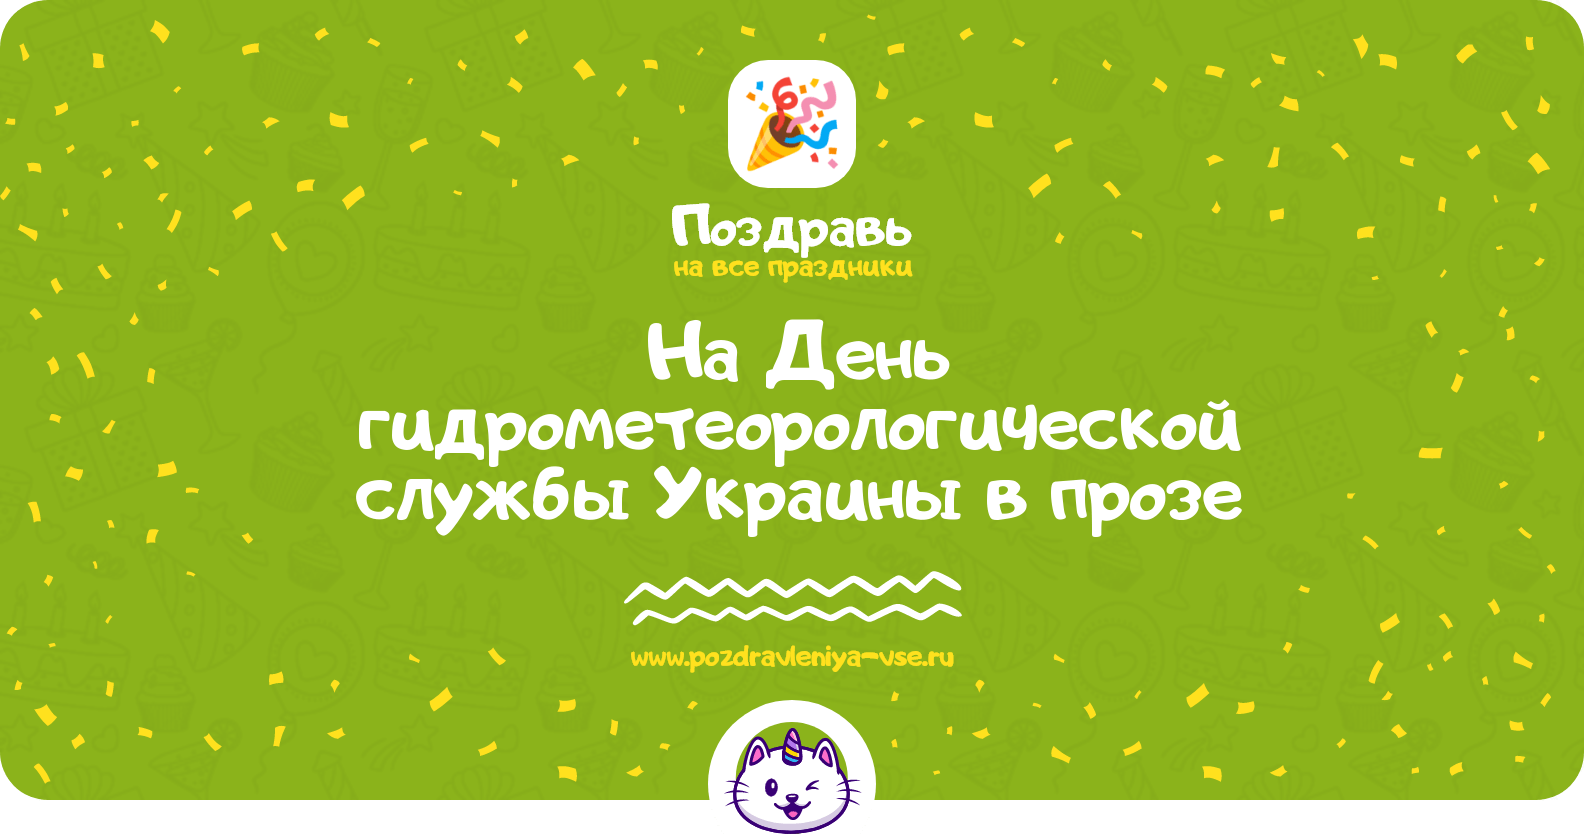 Поздравления на День гидрометеорологической службы Украины в прозе